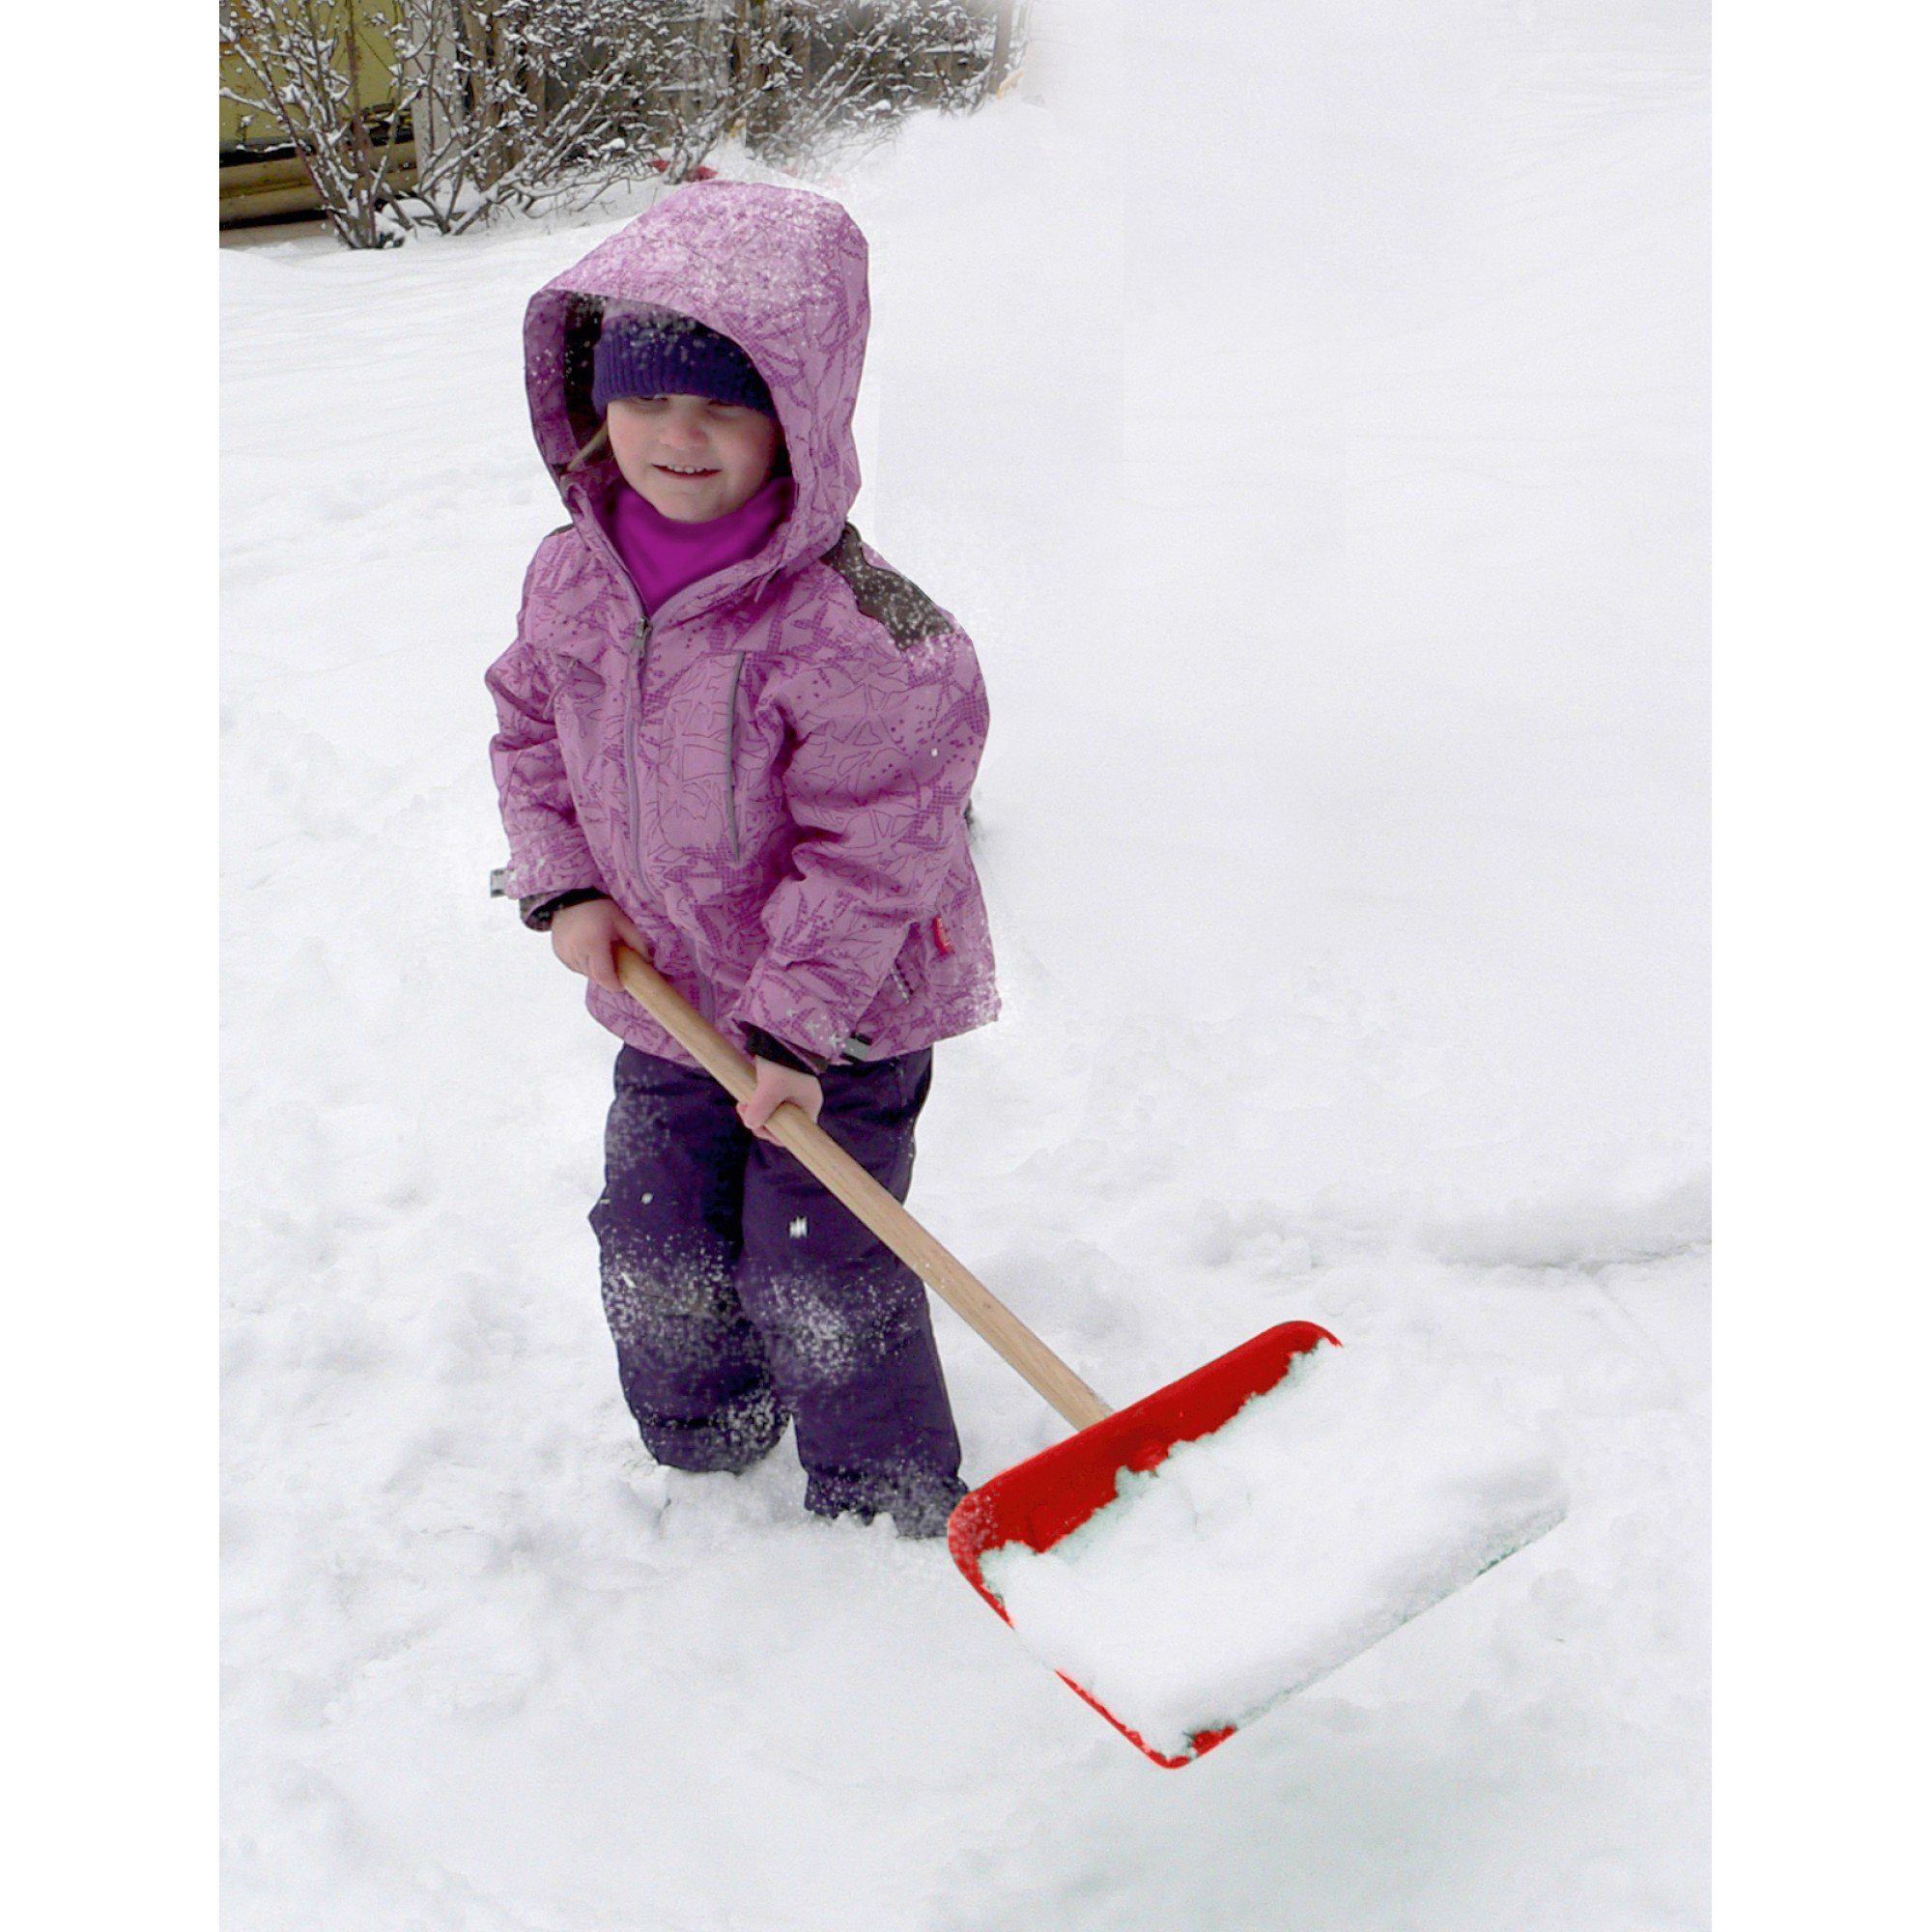 Triuso Schneeschieber Kinderschneeschieber Schneeschaufel rot mit Stiel  80cm, 28,50 cm Arbeitsbreite, Blatt aus hochwertigem Polyäthylen-Kunststoff